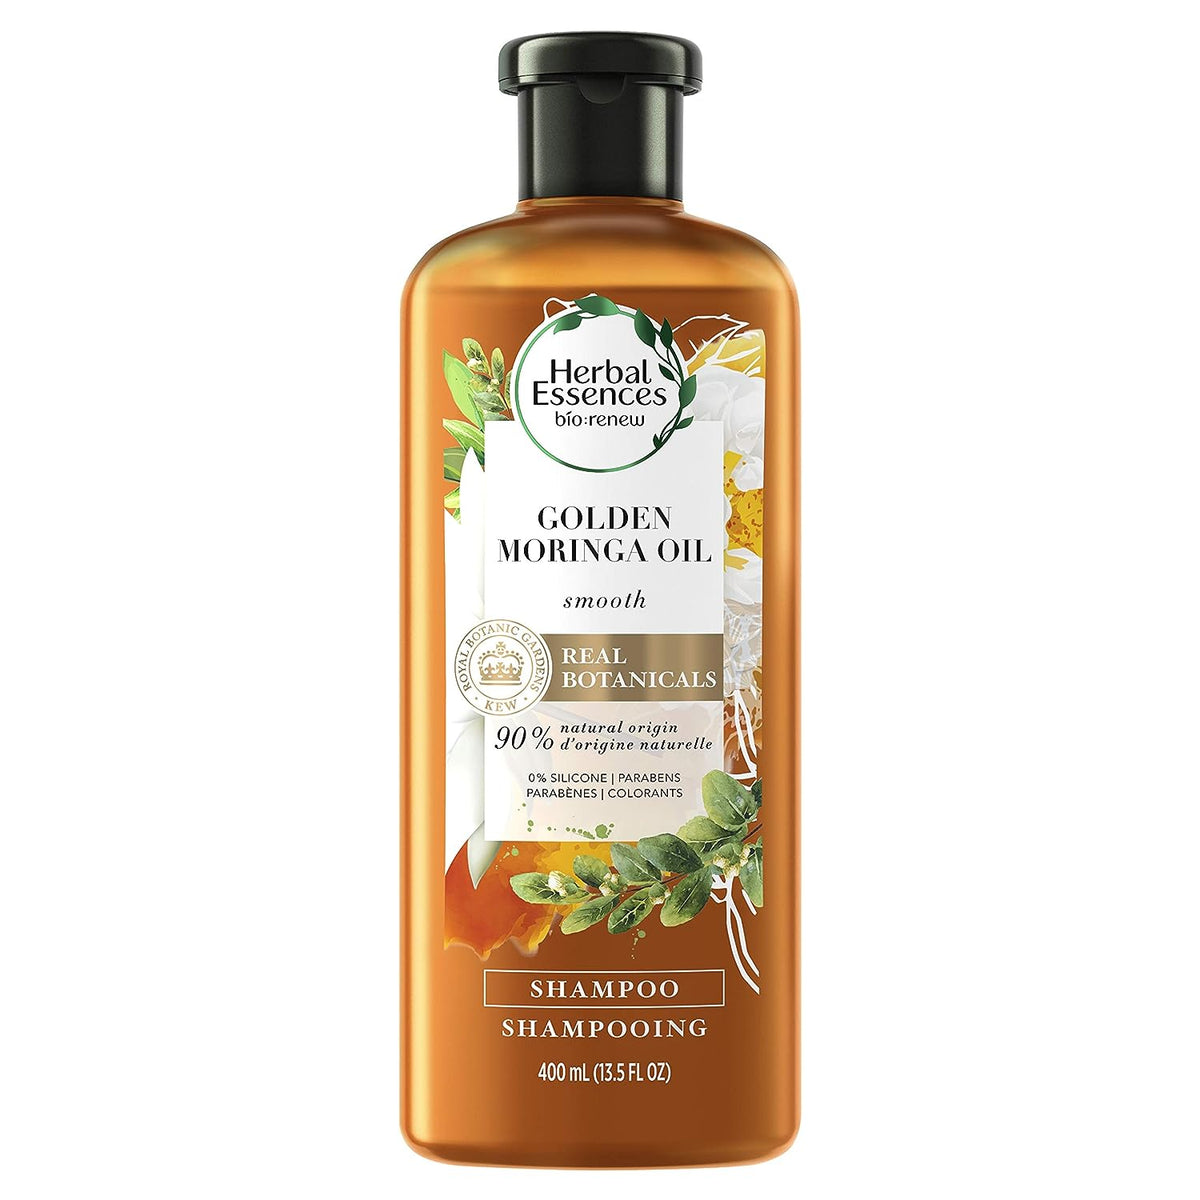 Shampoo Herbal Essences Bio Renew con aceite de Moringa